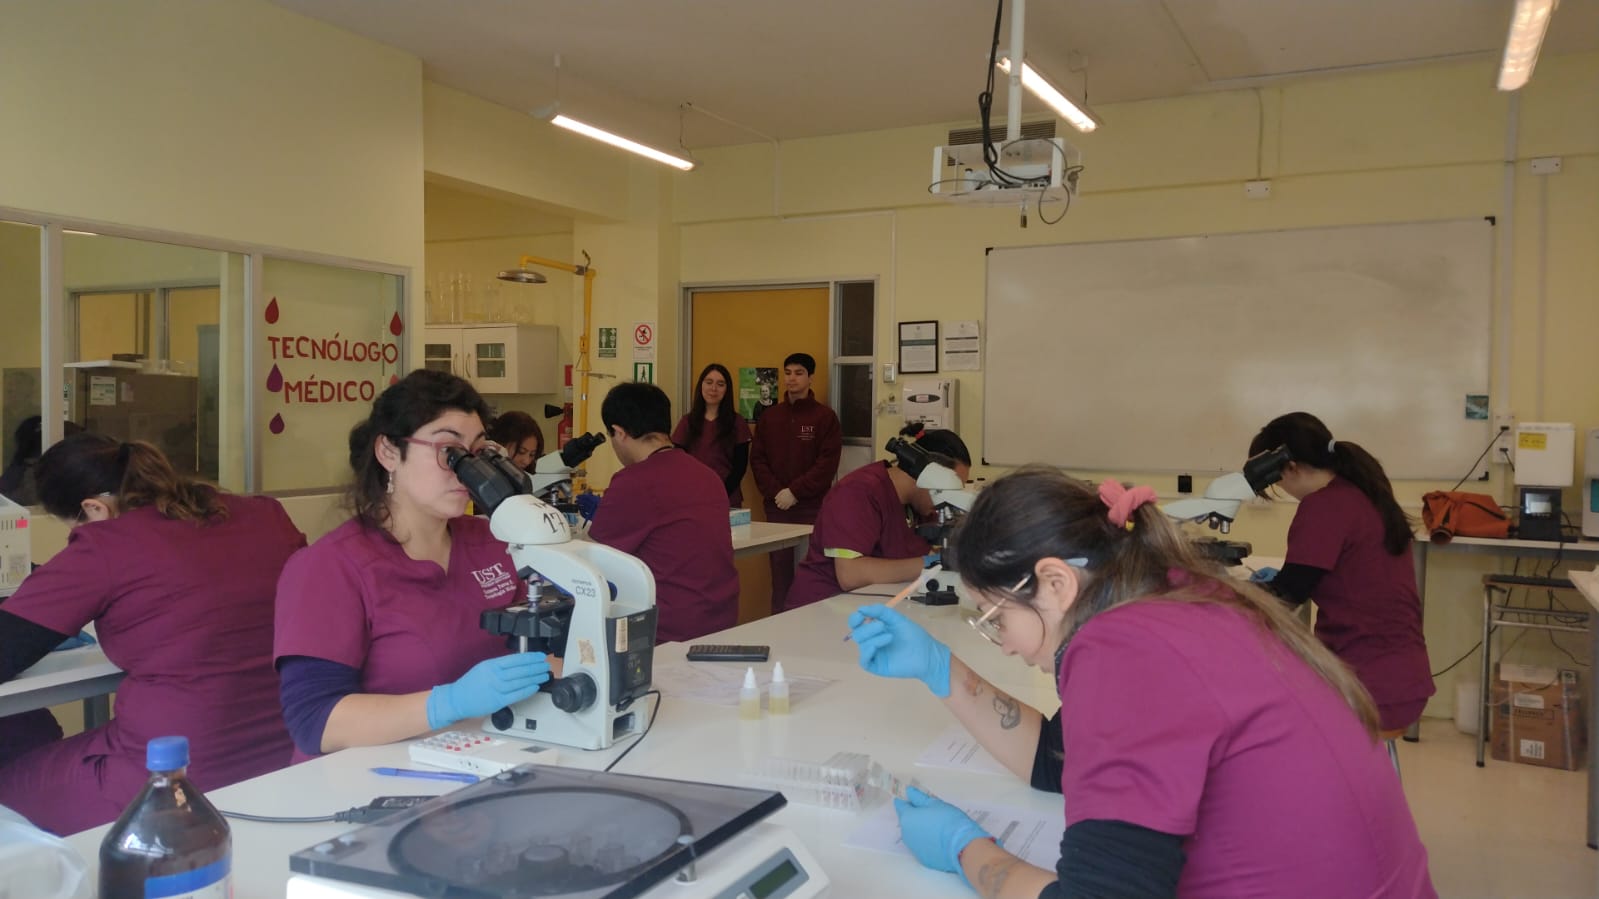 Tecnología Médica UST Puerto Montt evaluó competencias del perfil de egreso en sus estudiantes